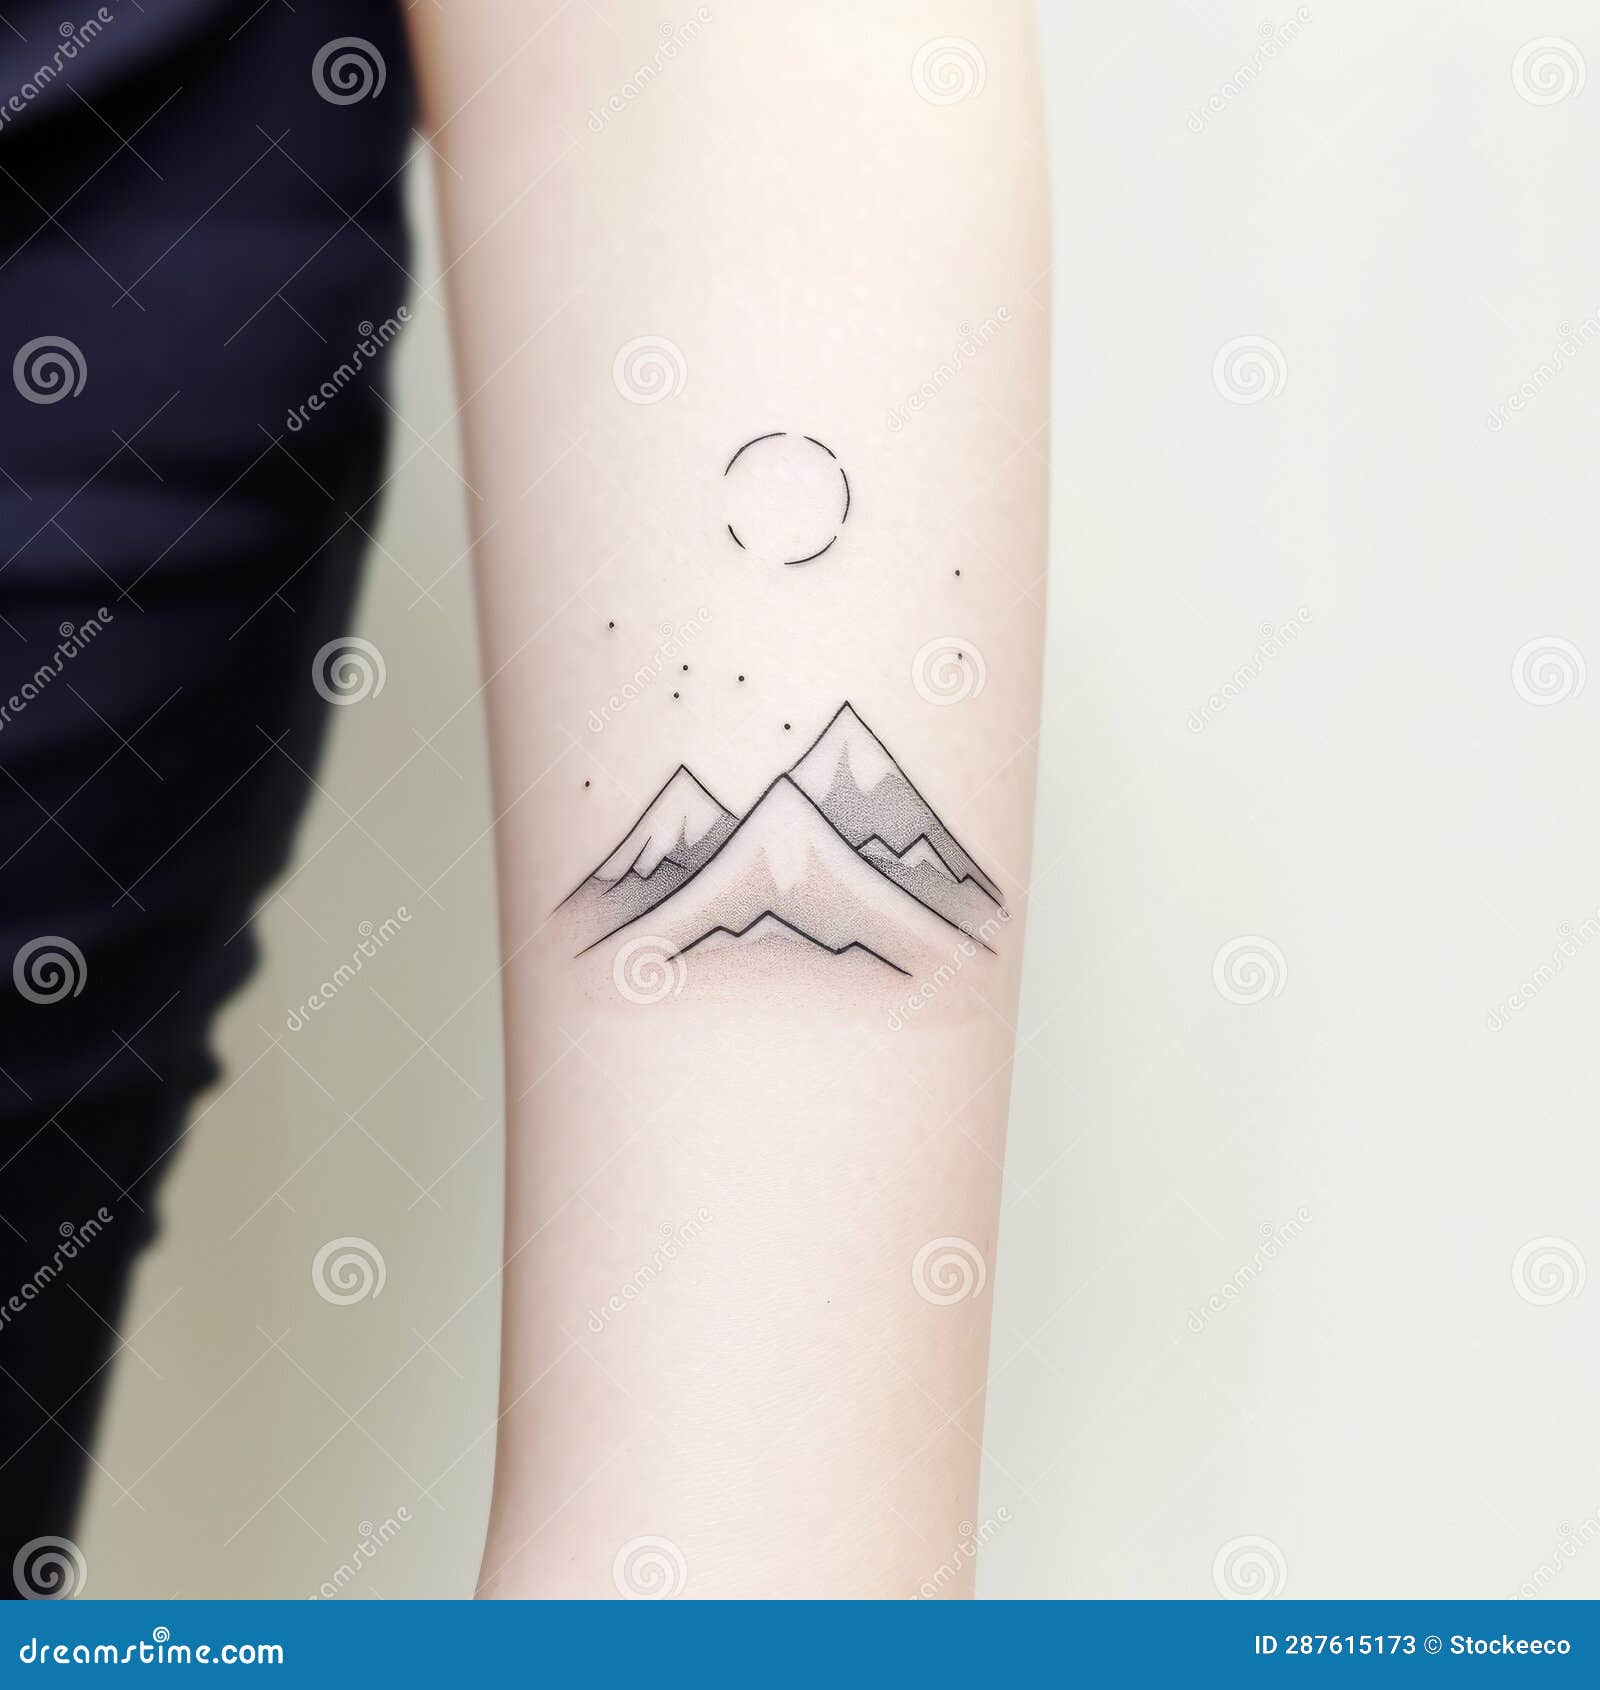 Tattoo Ideas — Minimal Mountain Tattoo ...